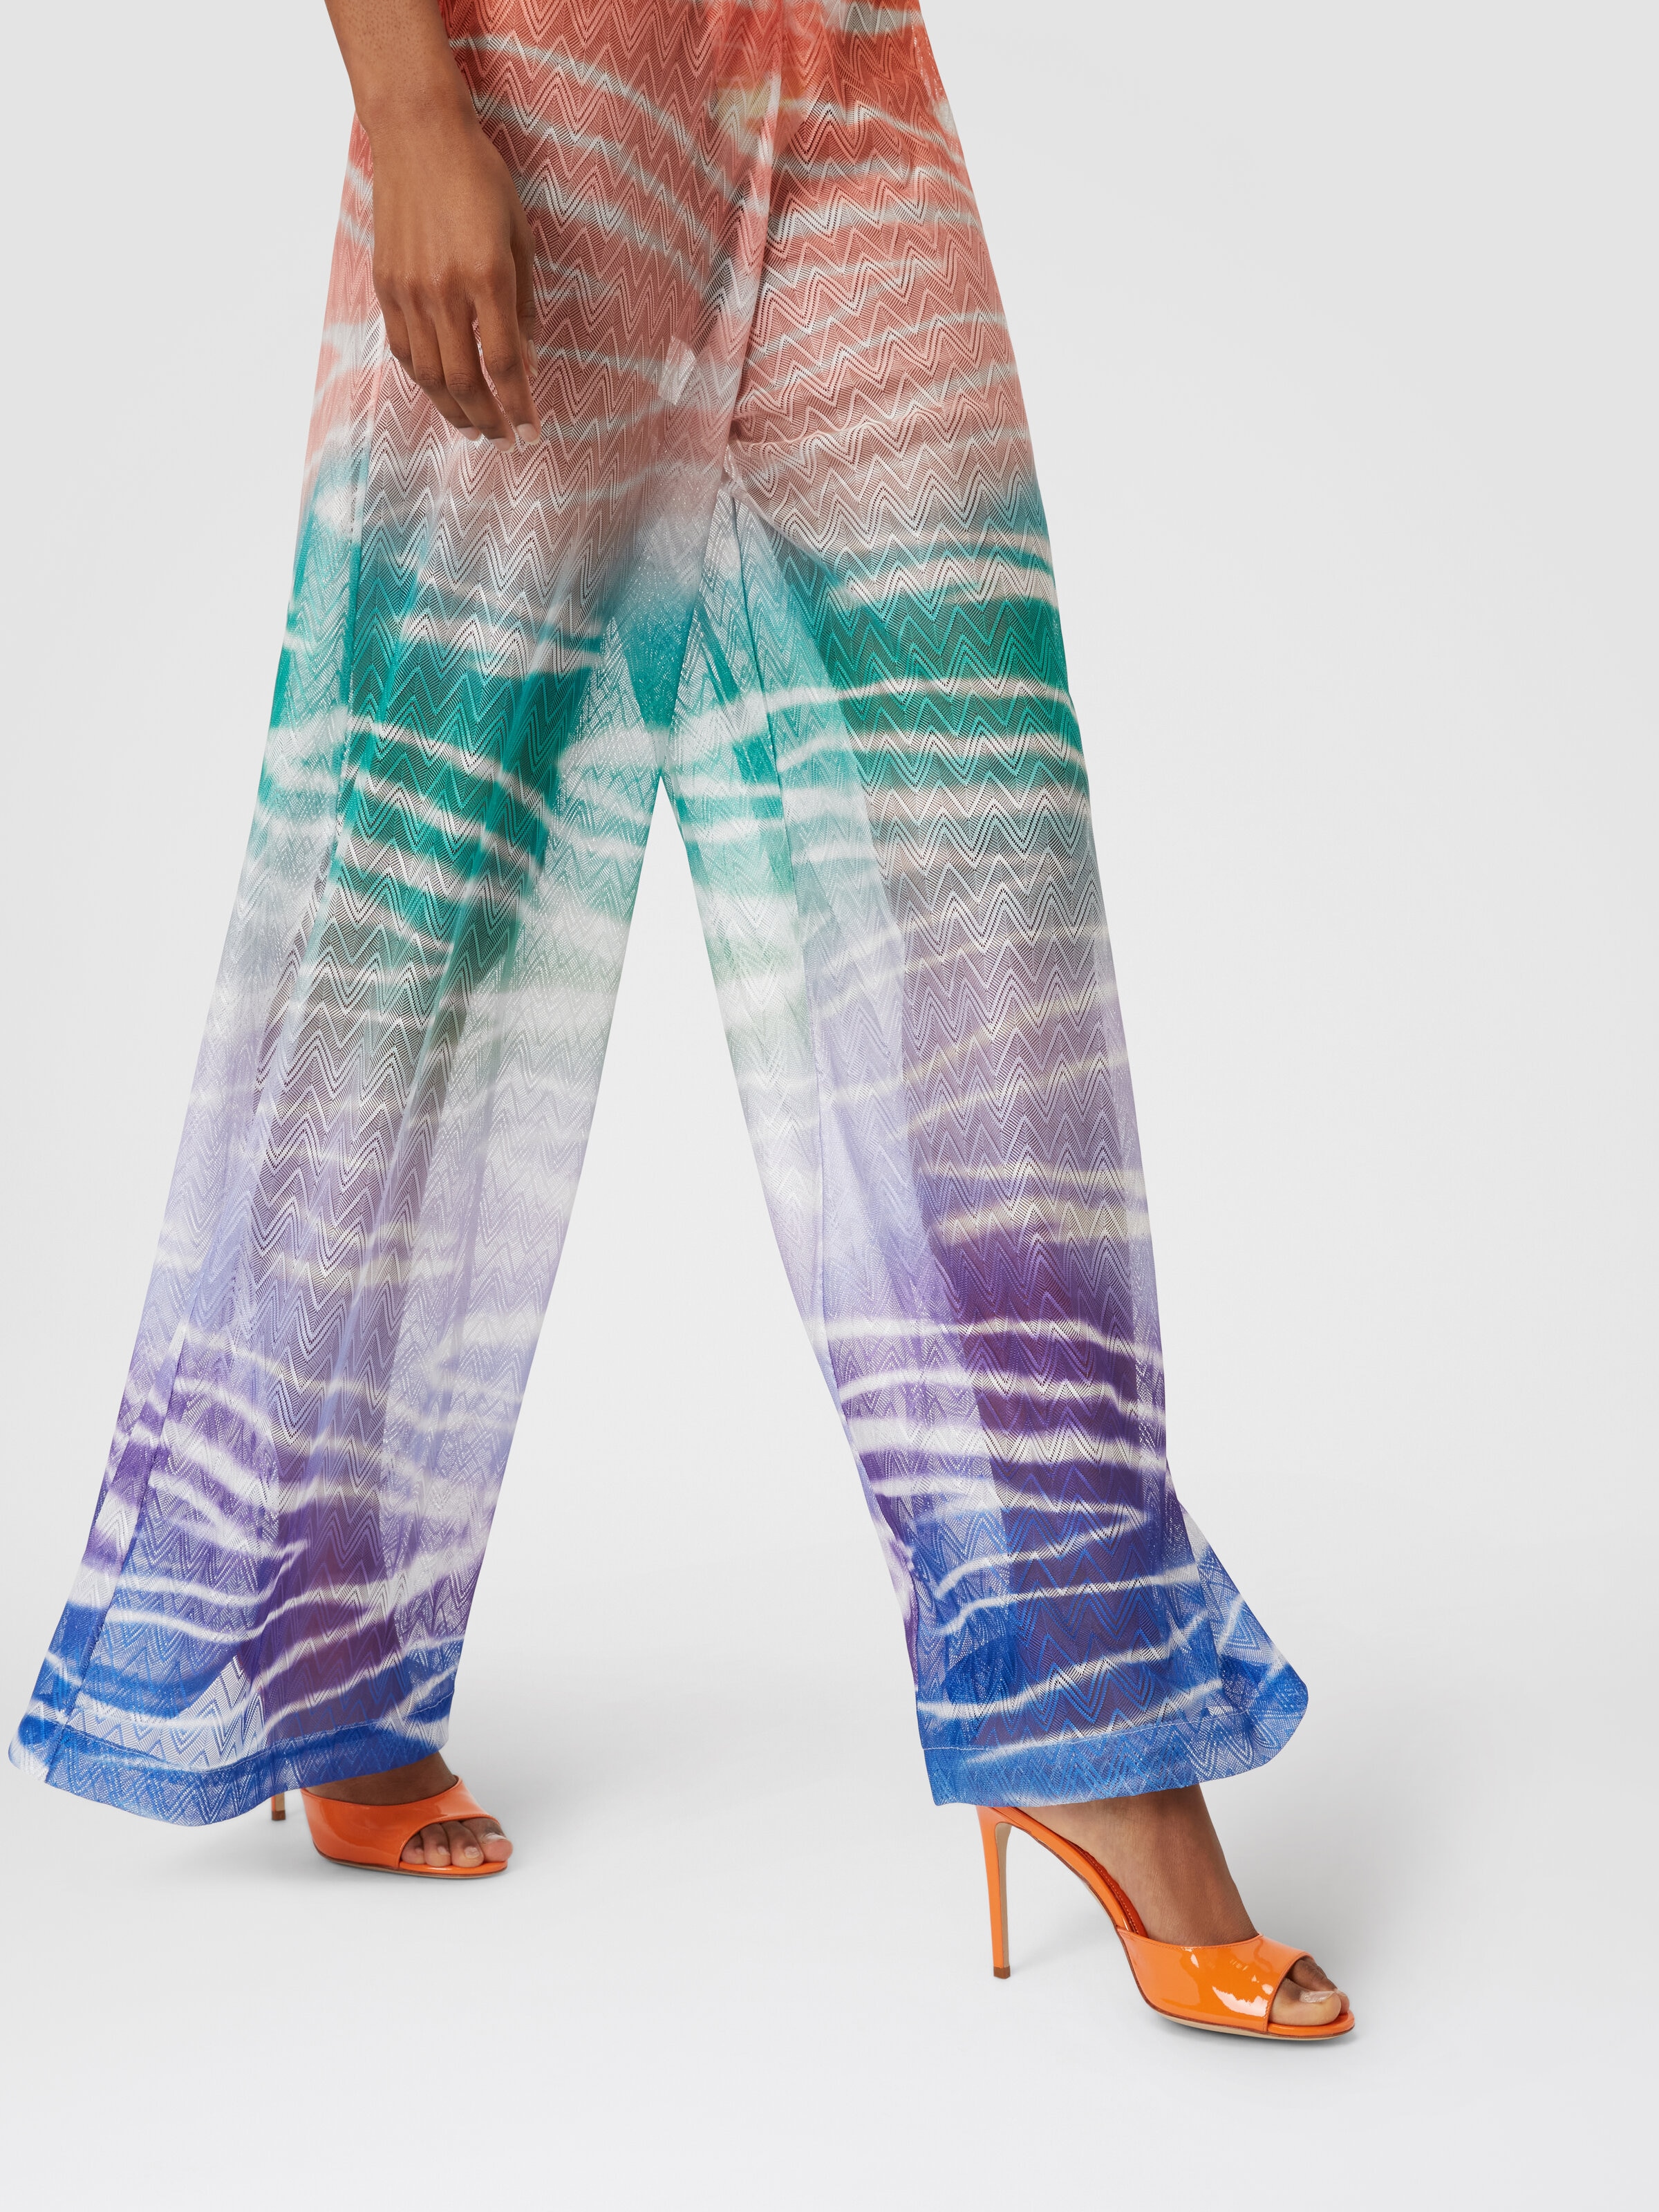 Pantalones cubrebikini estampado tie-dye, Multicolor  - 4